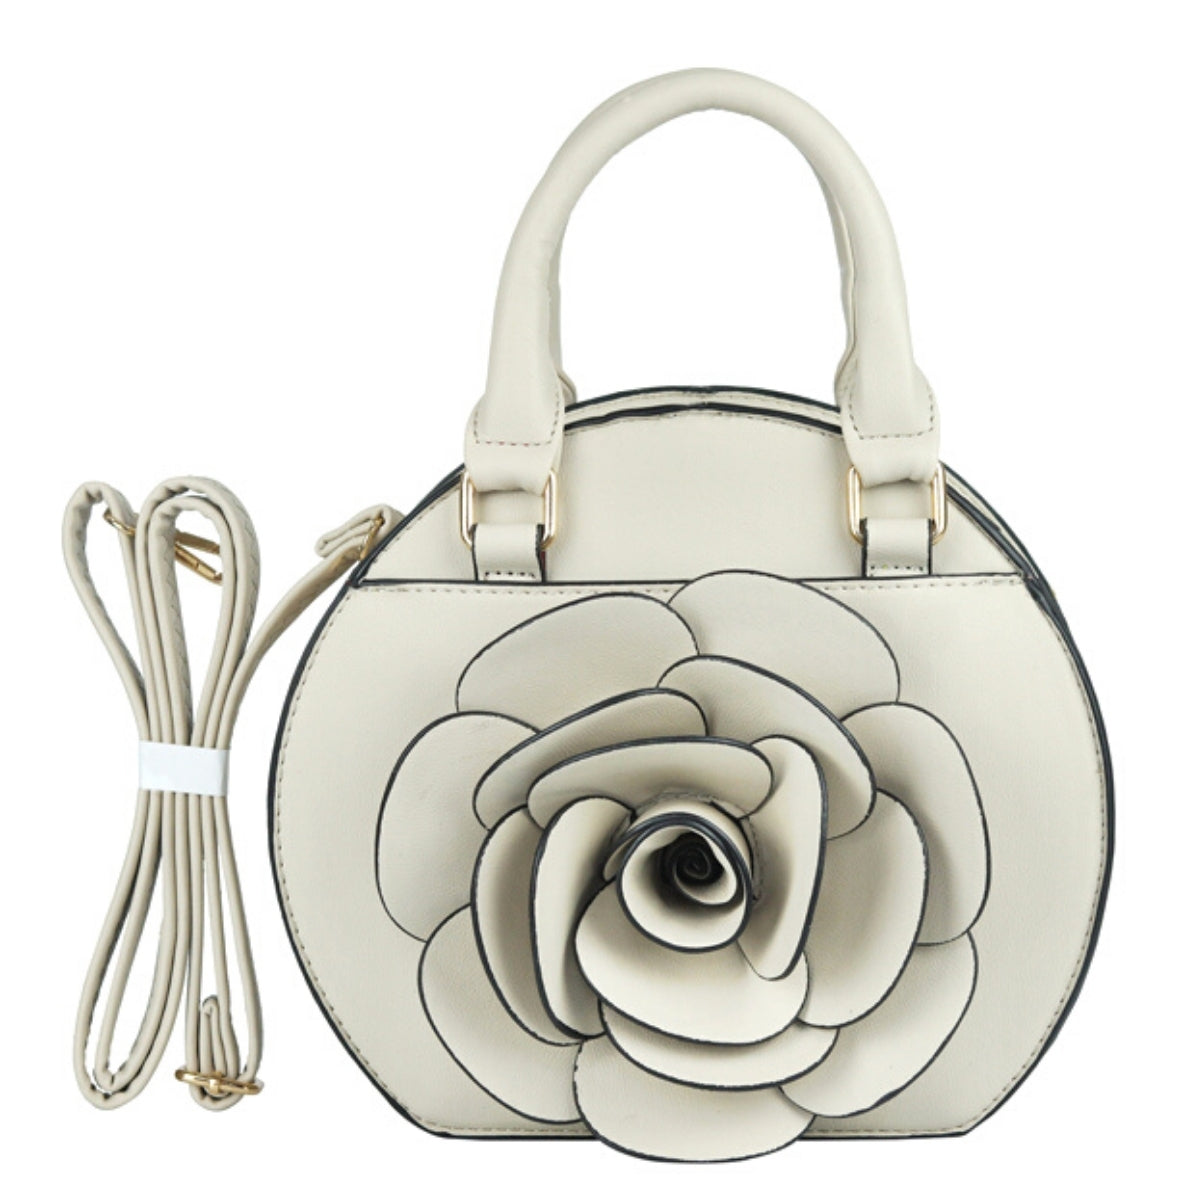 White Rose Rounded Handbag